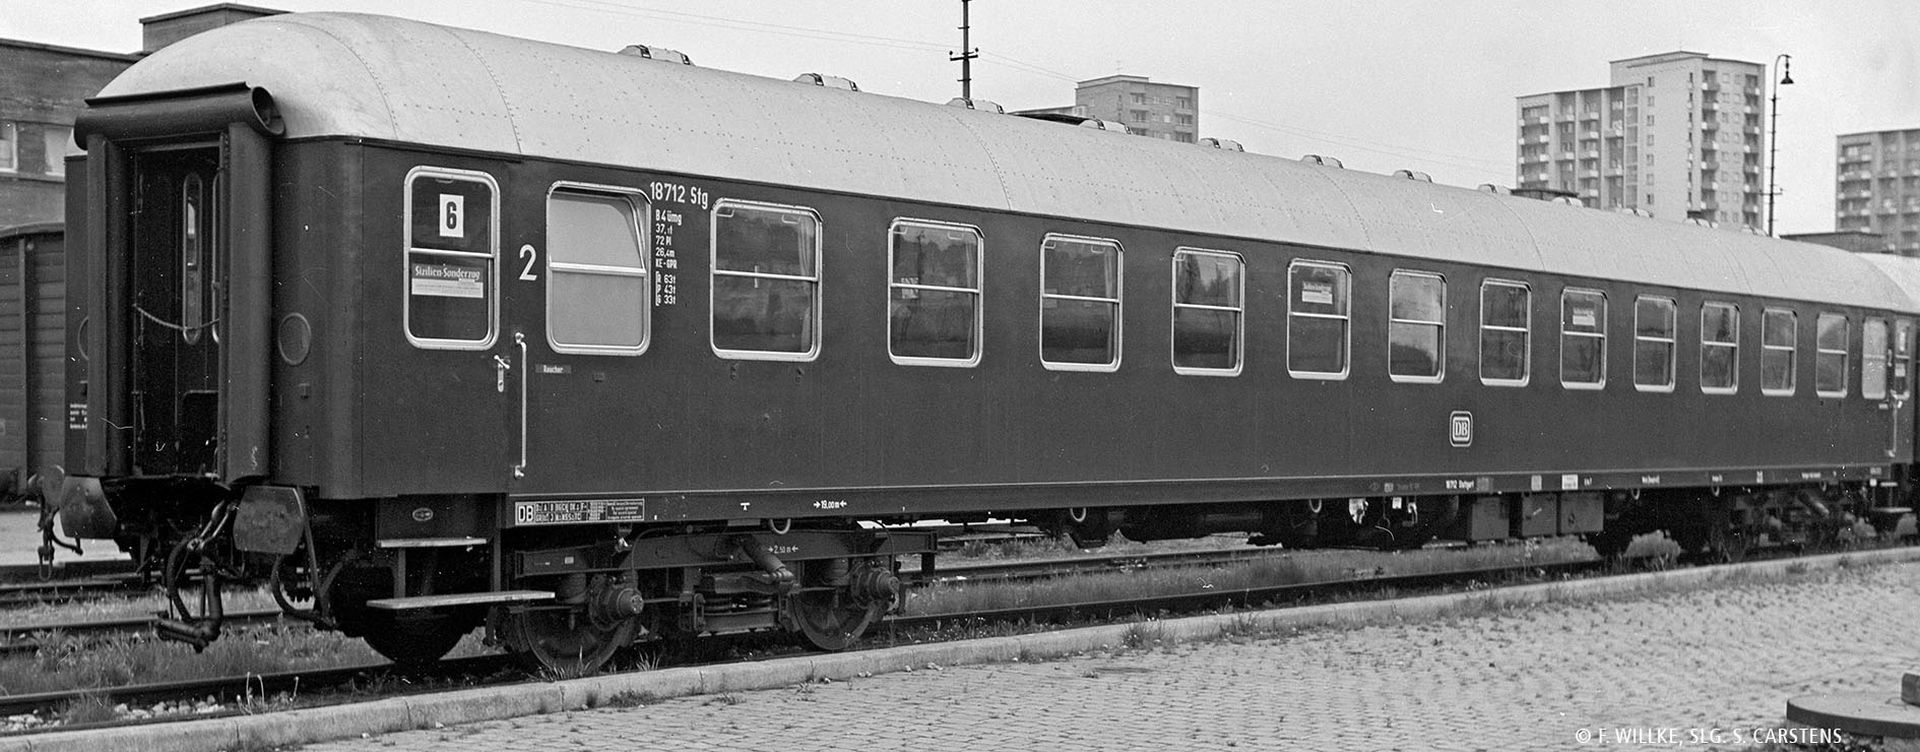 Brawa 58132 - Schnellzugwagen Bm232, DB, Ep.IV, mit Beleuchtung